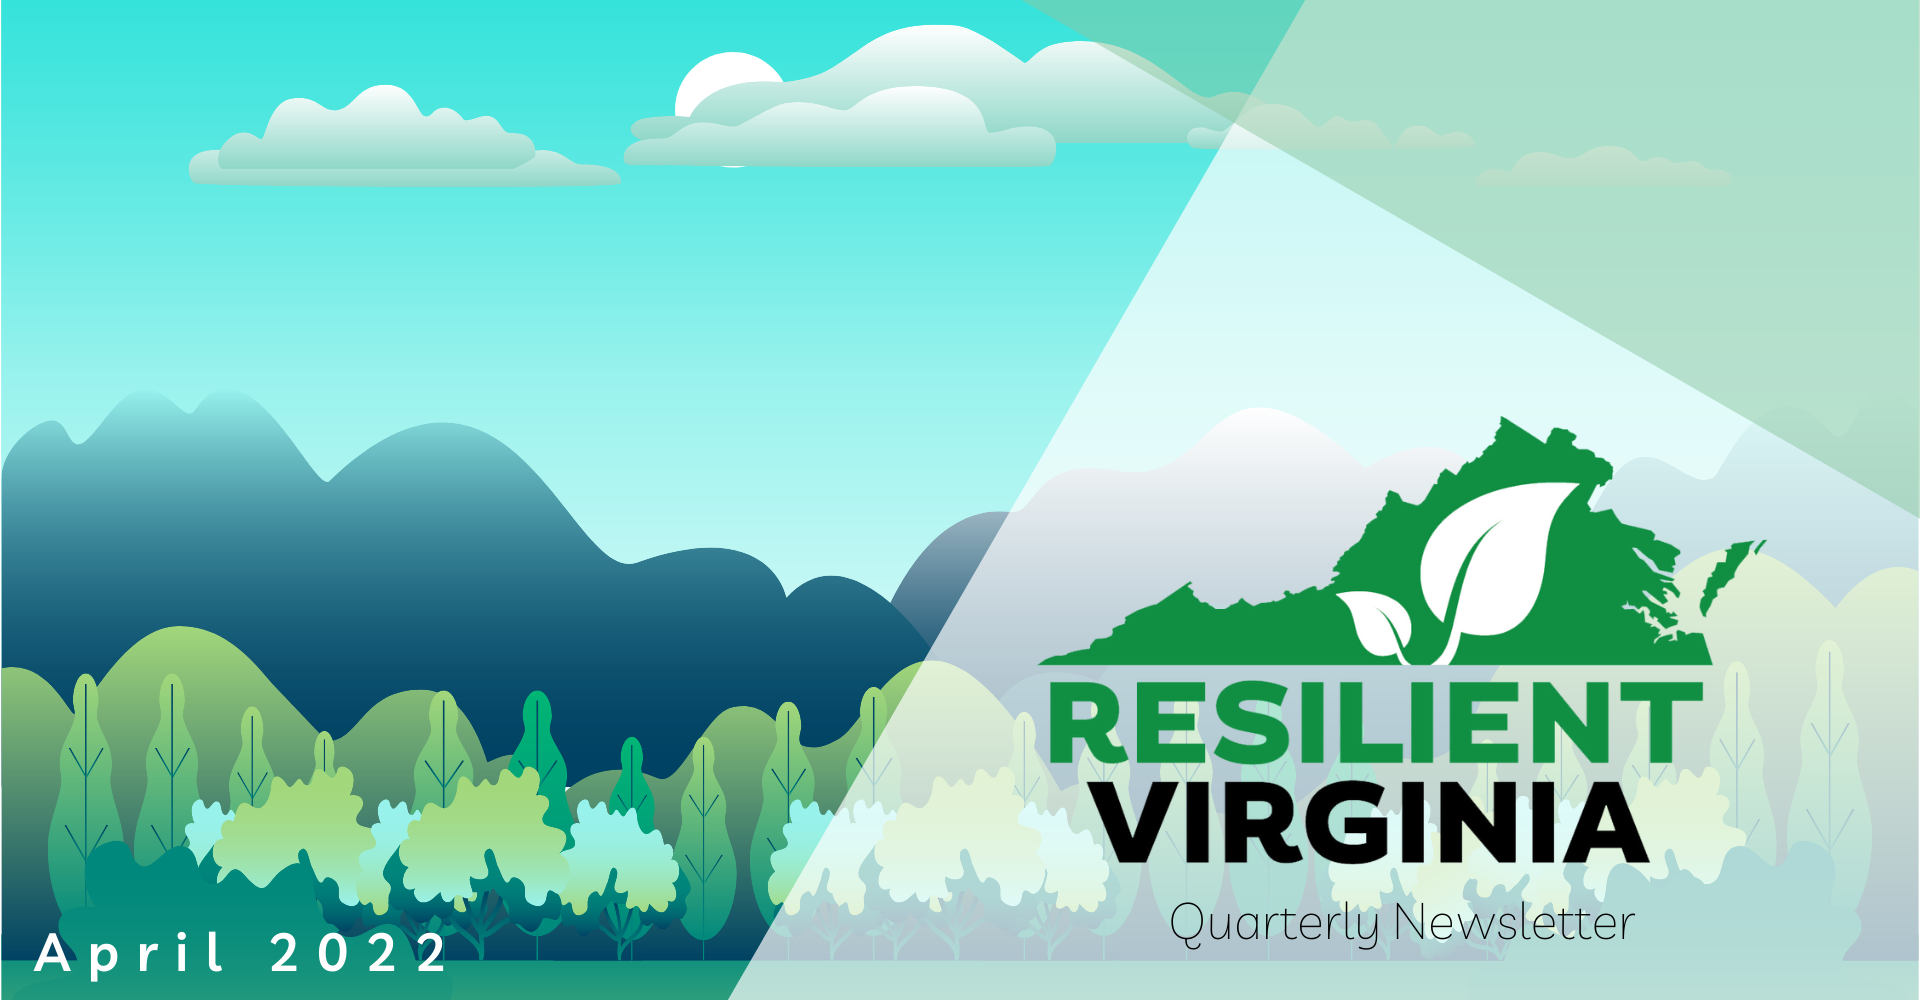 Resilient Virginia